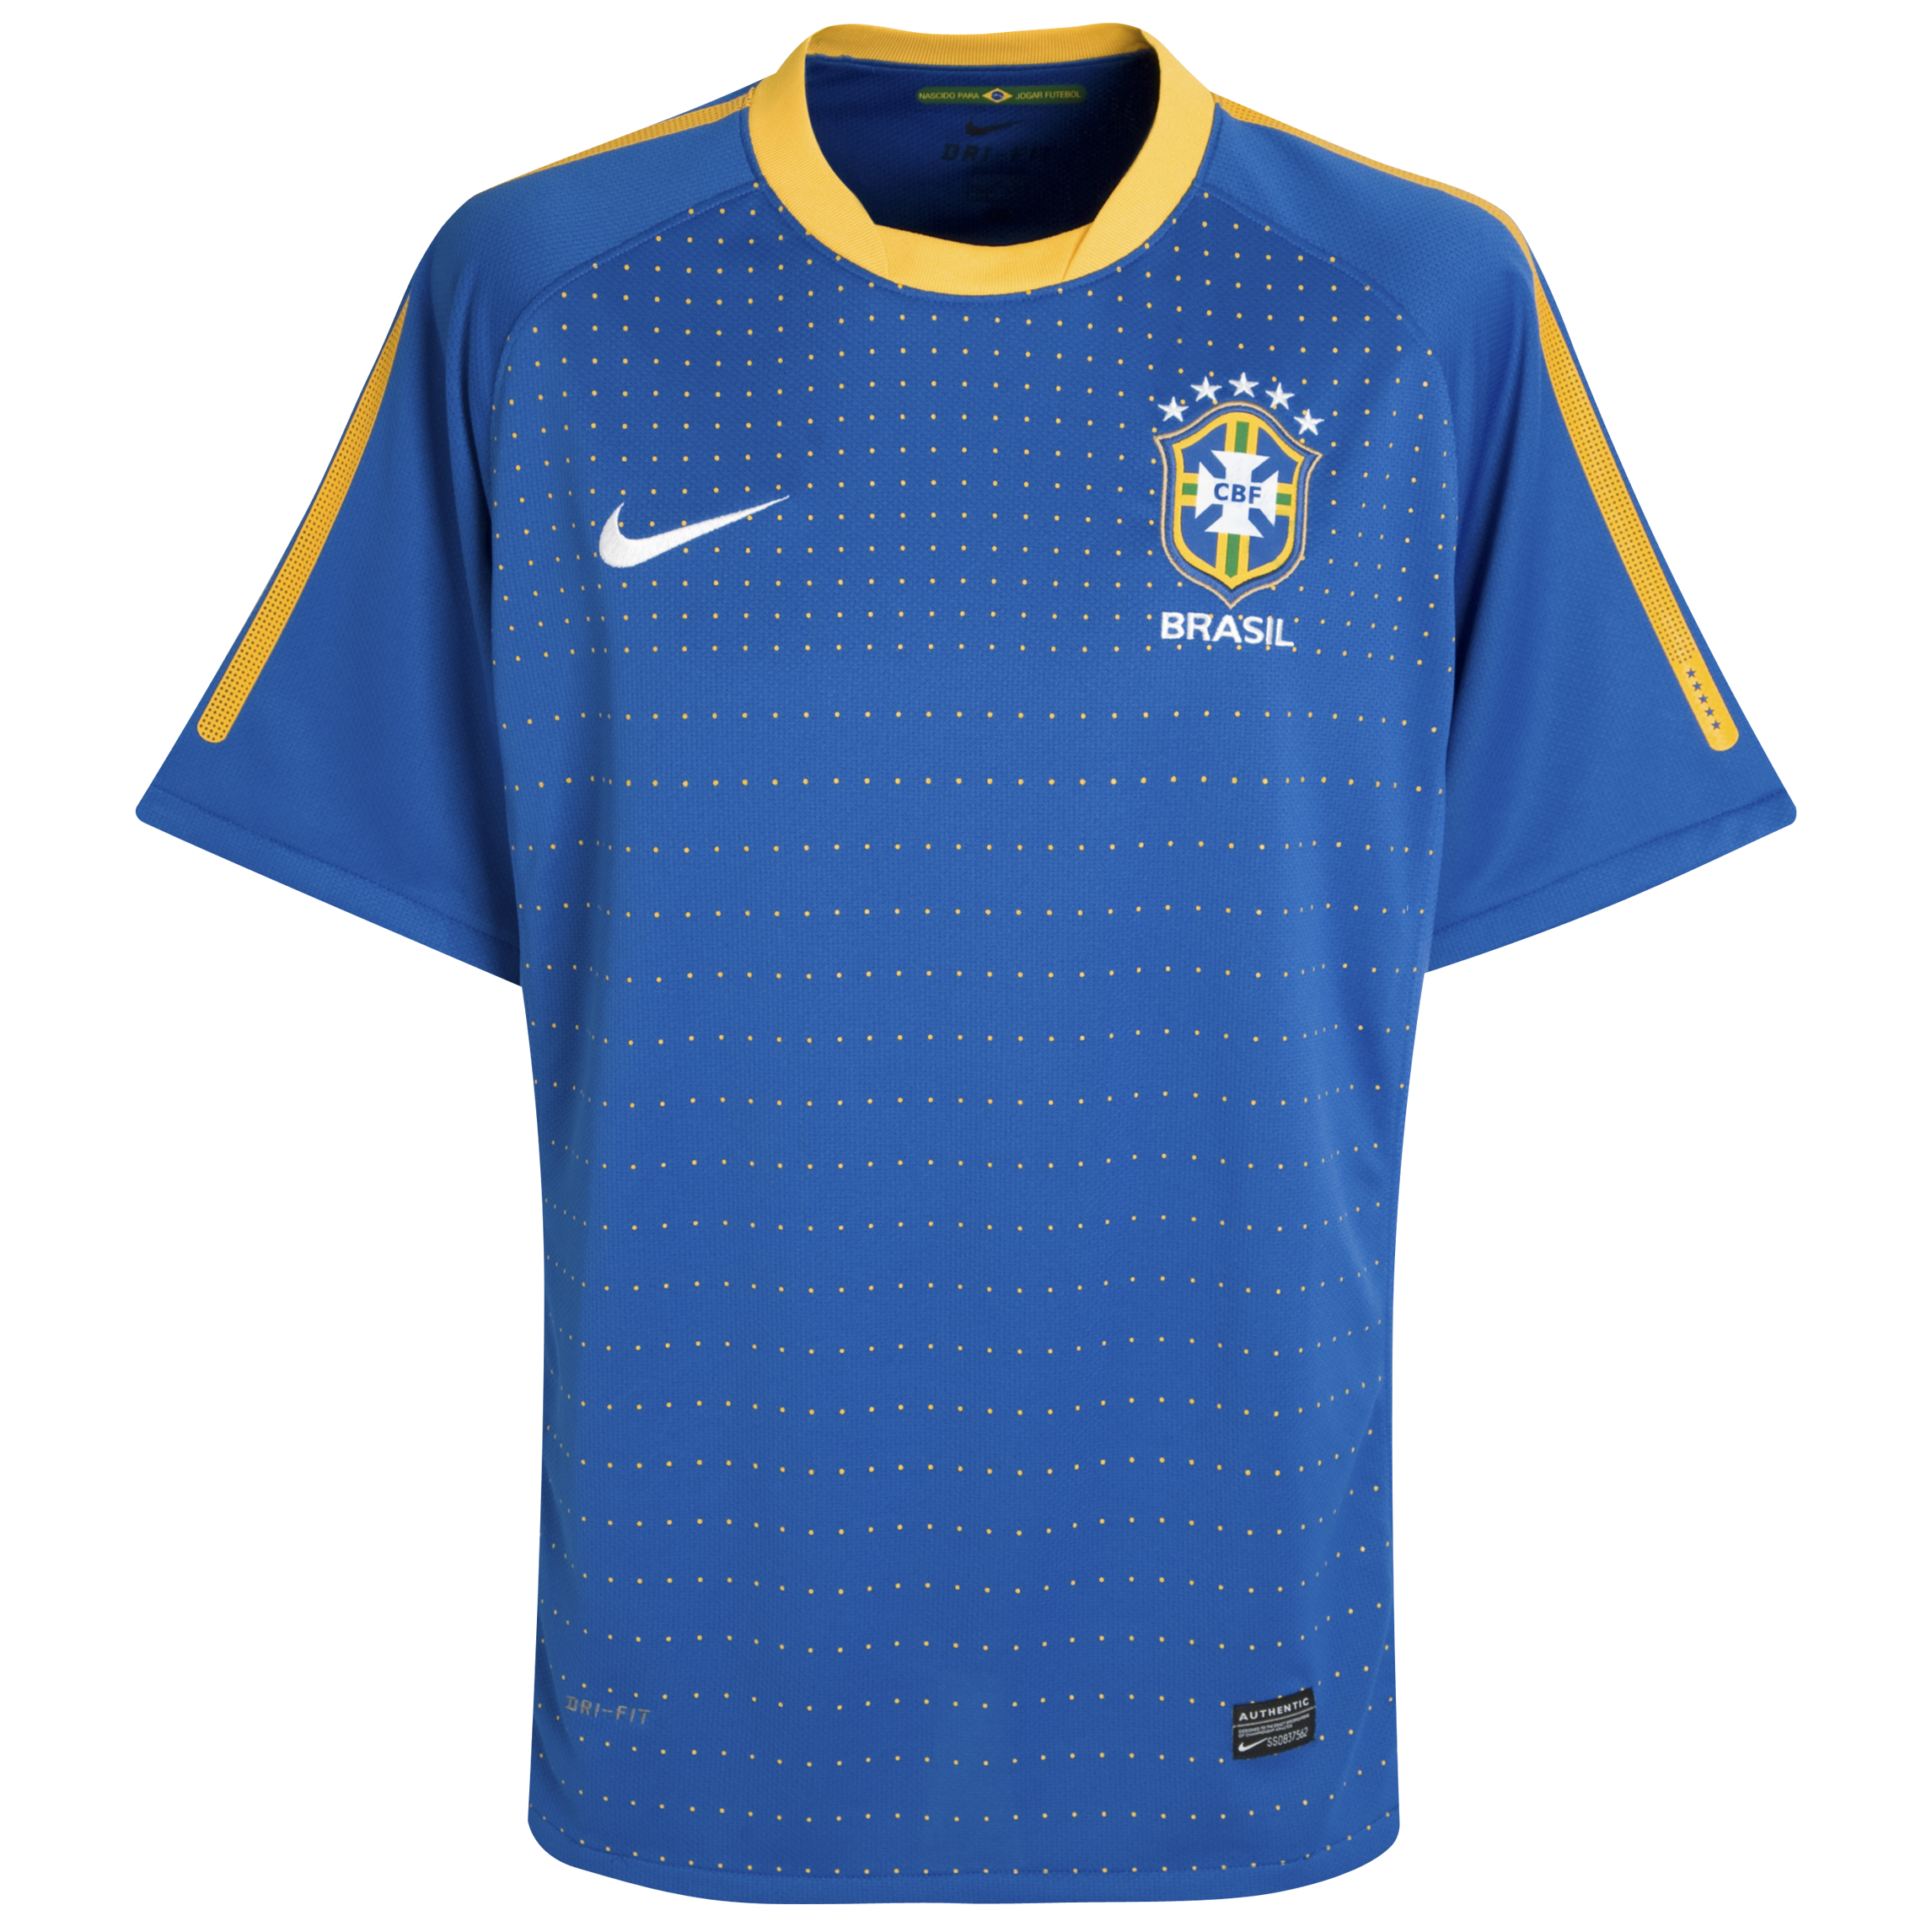 .¸-(_ (قمصان جميع المنتخبات لكأس العالم 2010) _)-,. Kb-65930